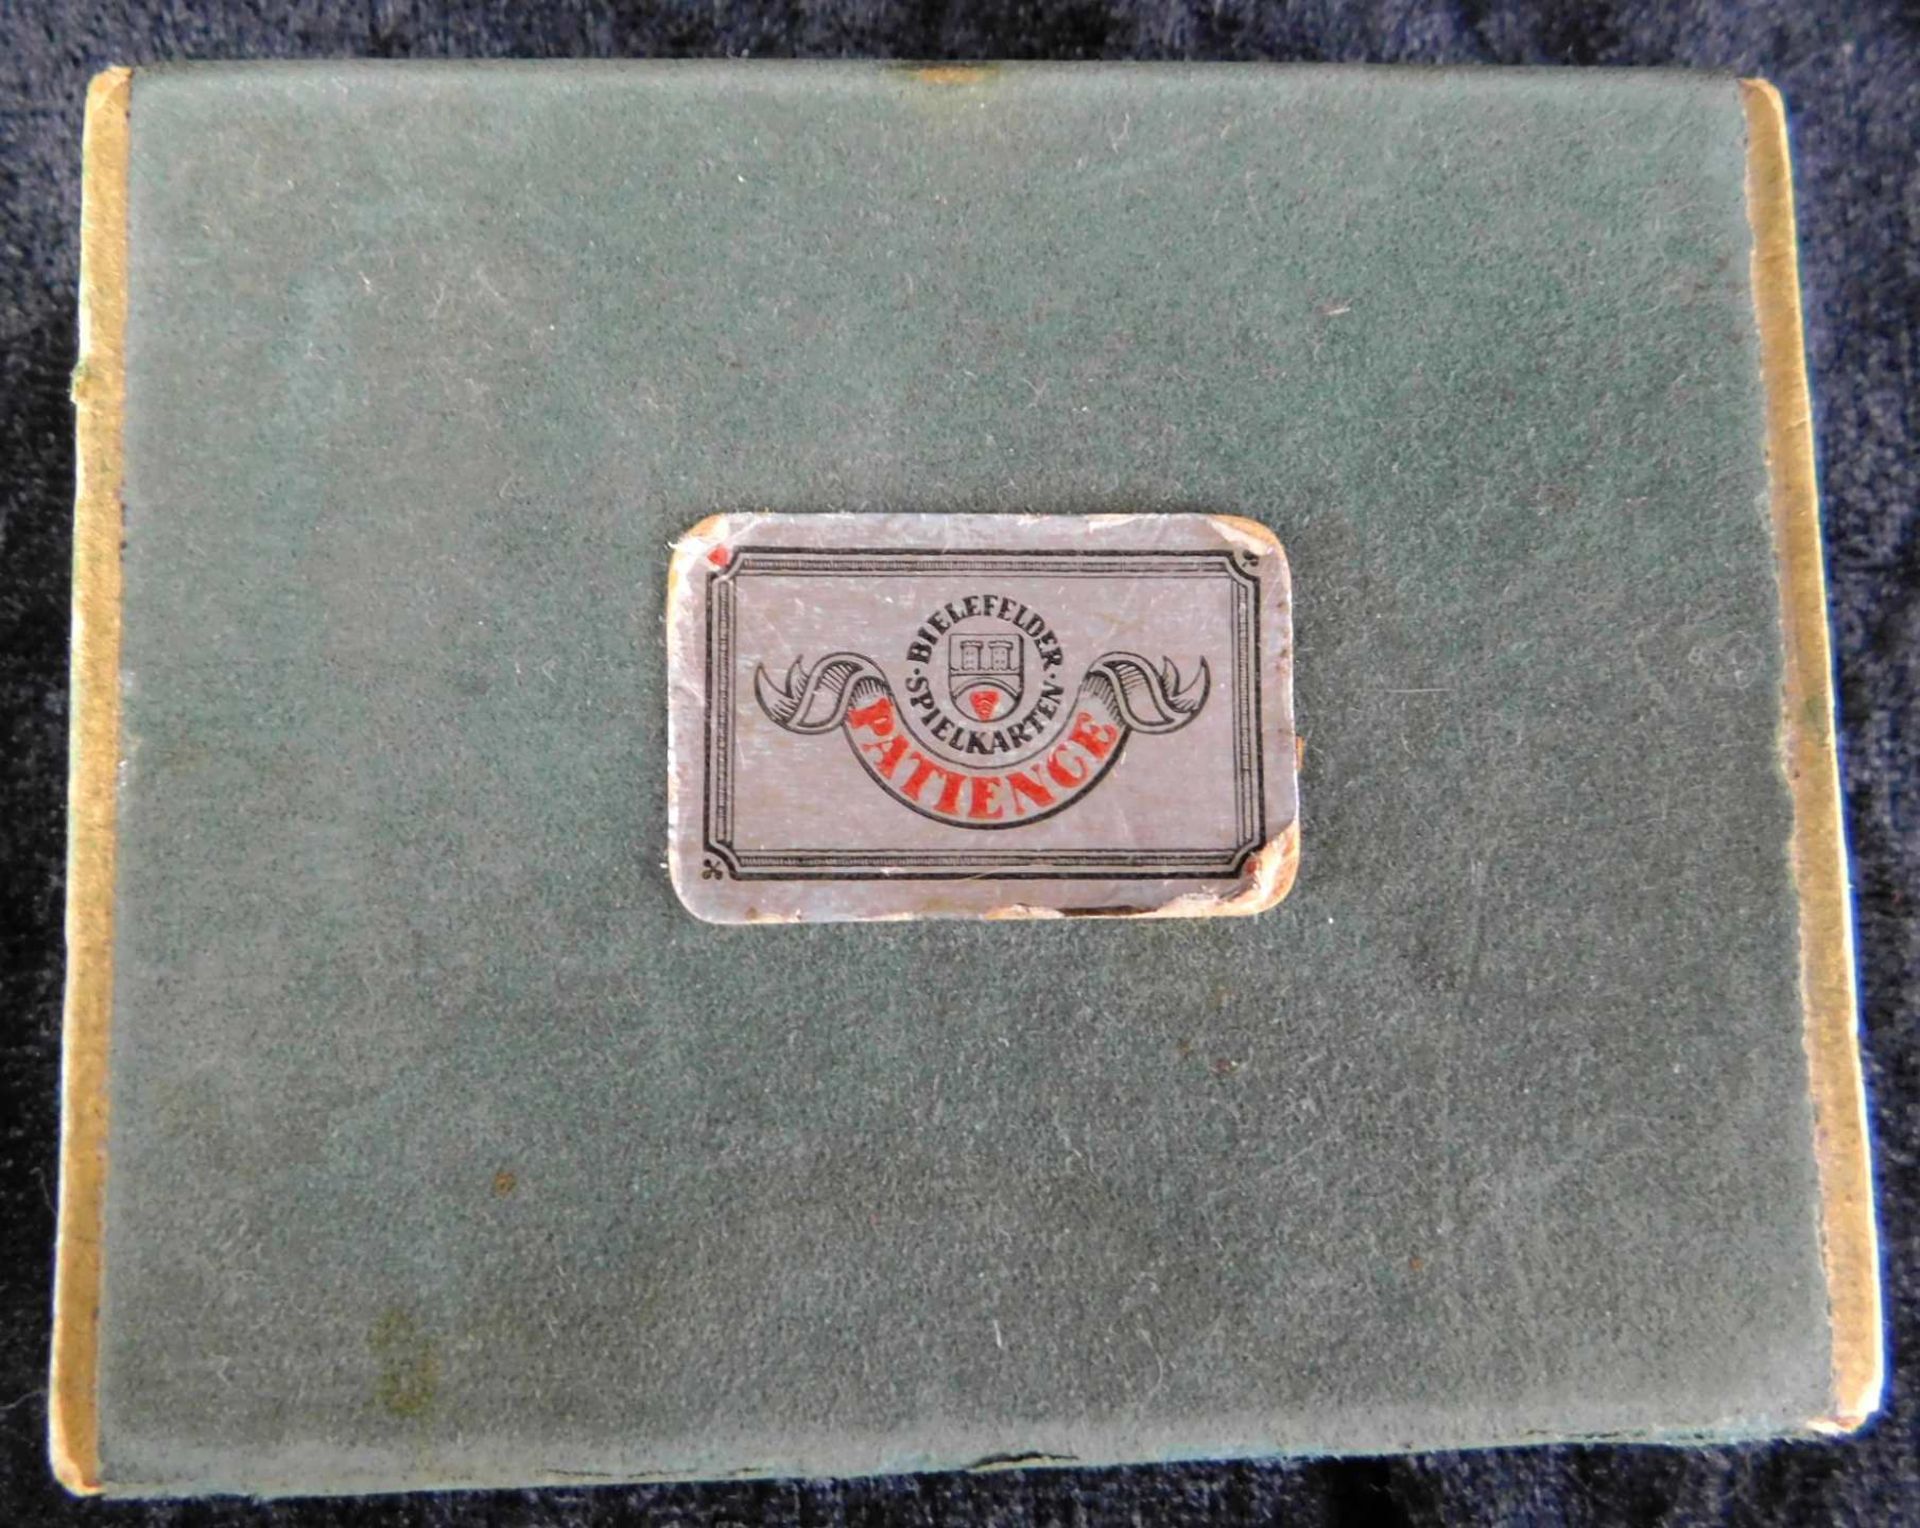 Patience-Kartenspiel, Bielefelder Spielkarten, i. orig. Kasten, 9,5 x 7,5 x 2,5 cm, Gebrauchsspu